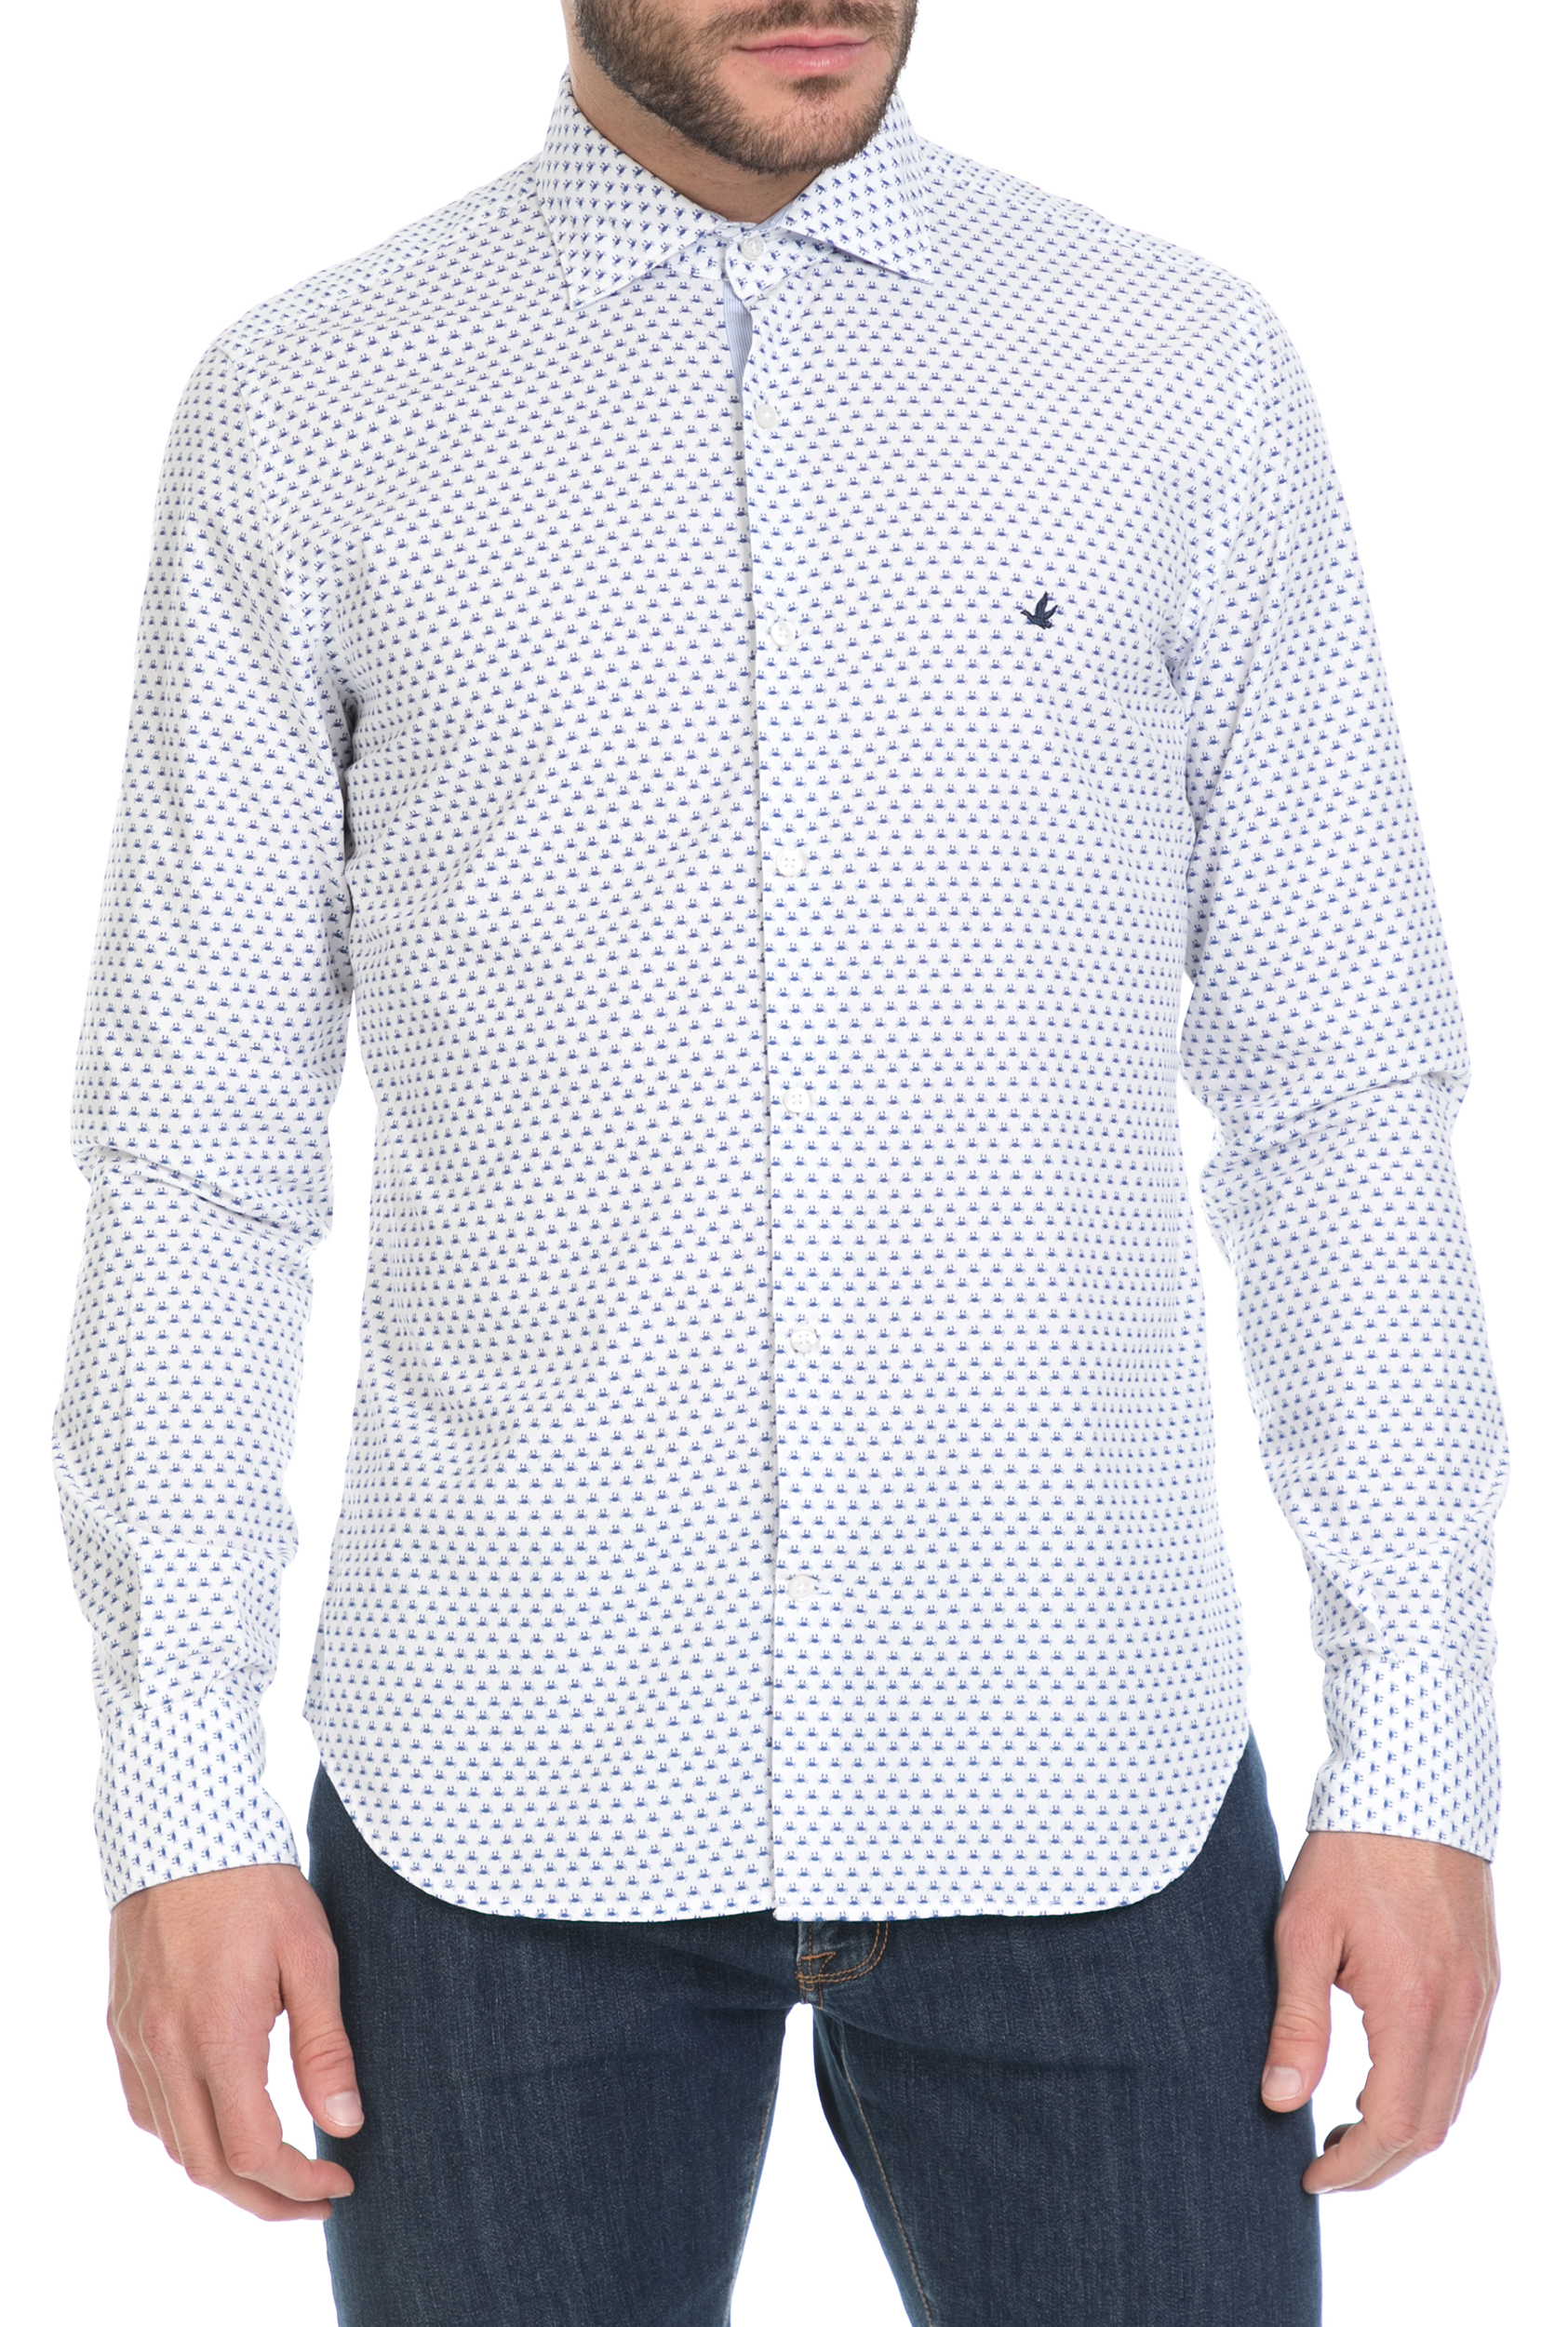 Ανδρικά/Ρούχα/Πουκάμισα/Μακρυμάνικα BROOKSFIELD - Ανδρικό μακρυμάνικο πουκάμισο Brooksfield λευκό